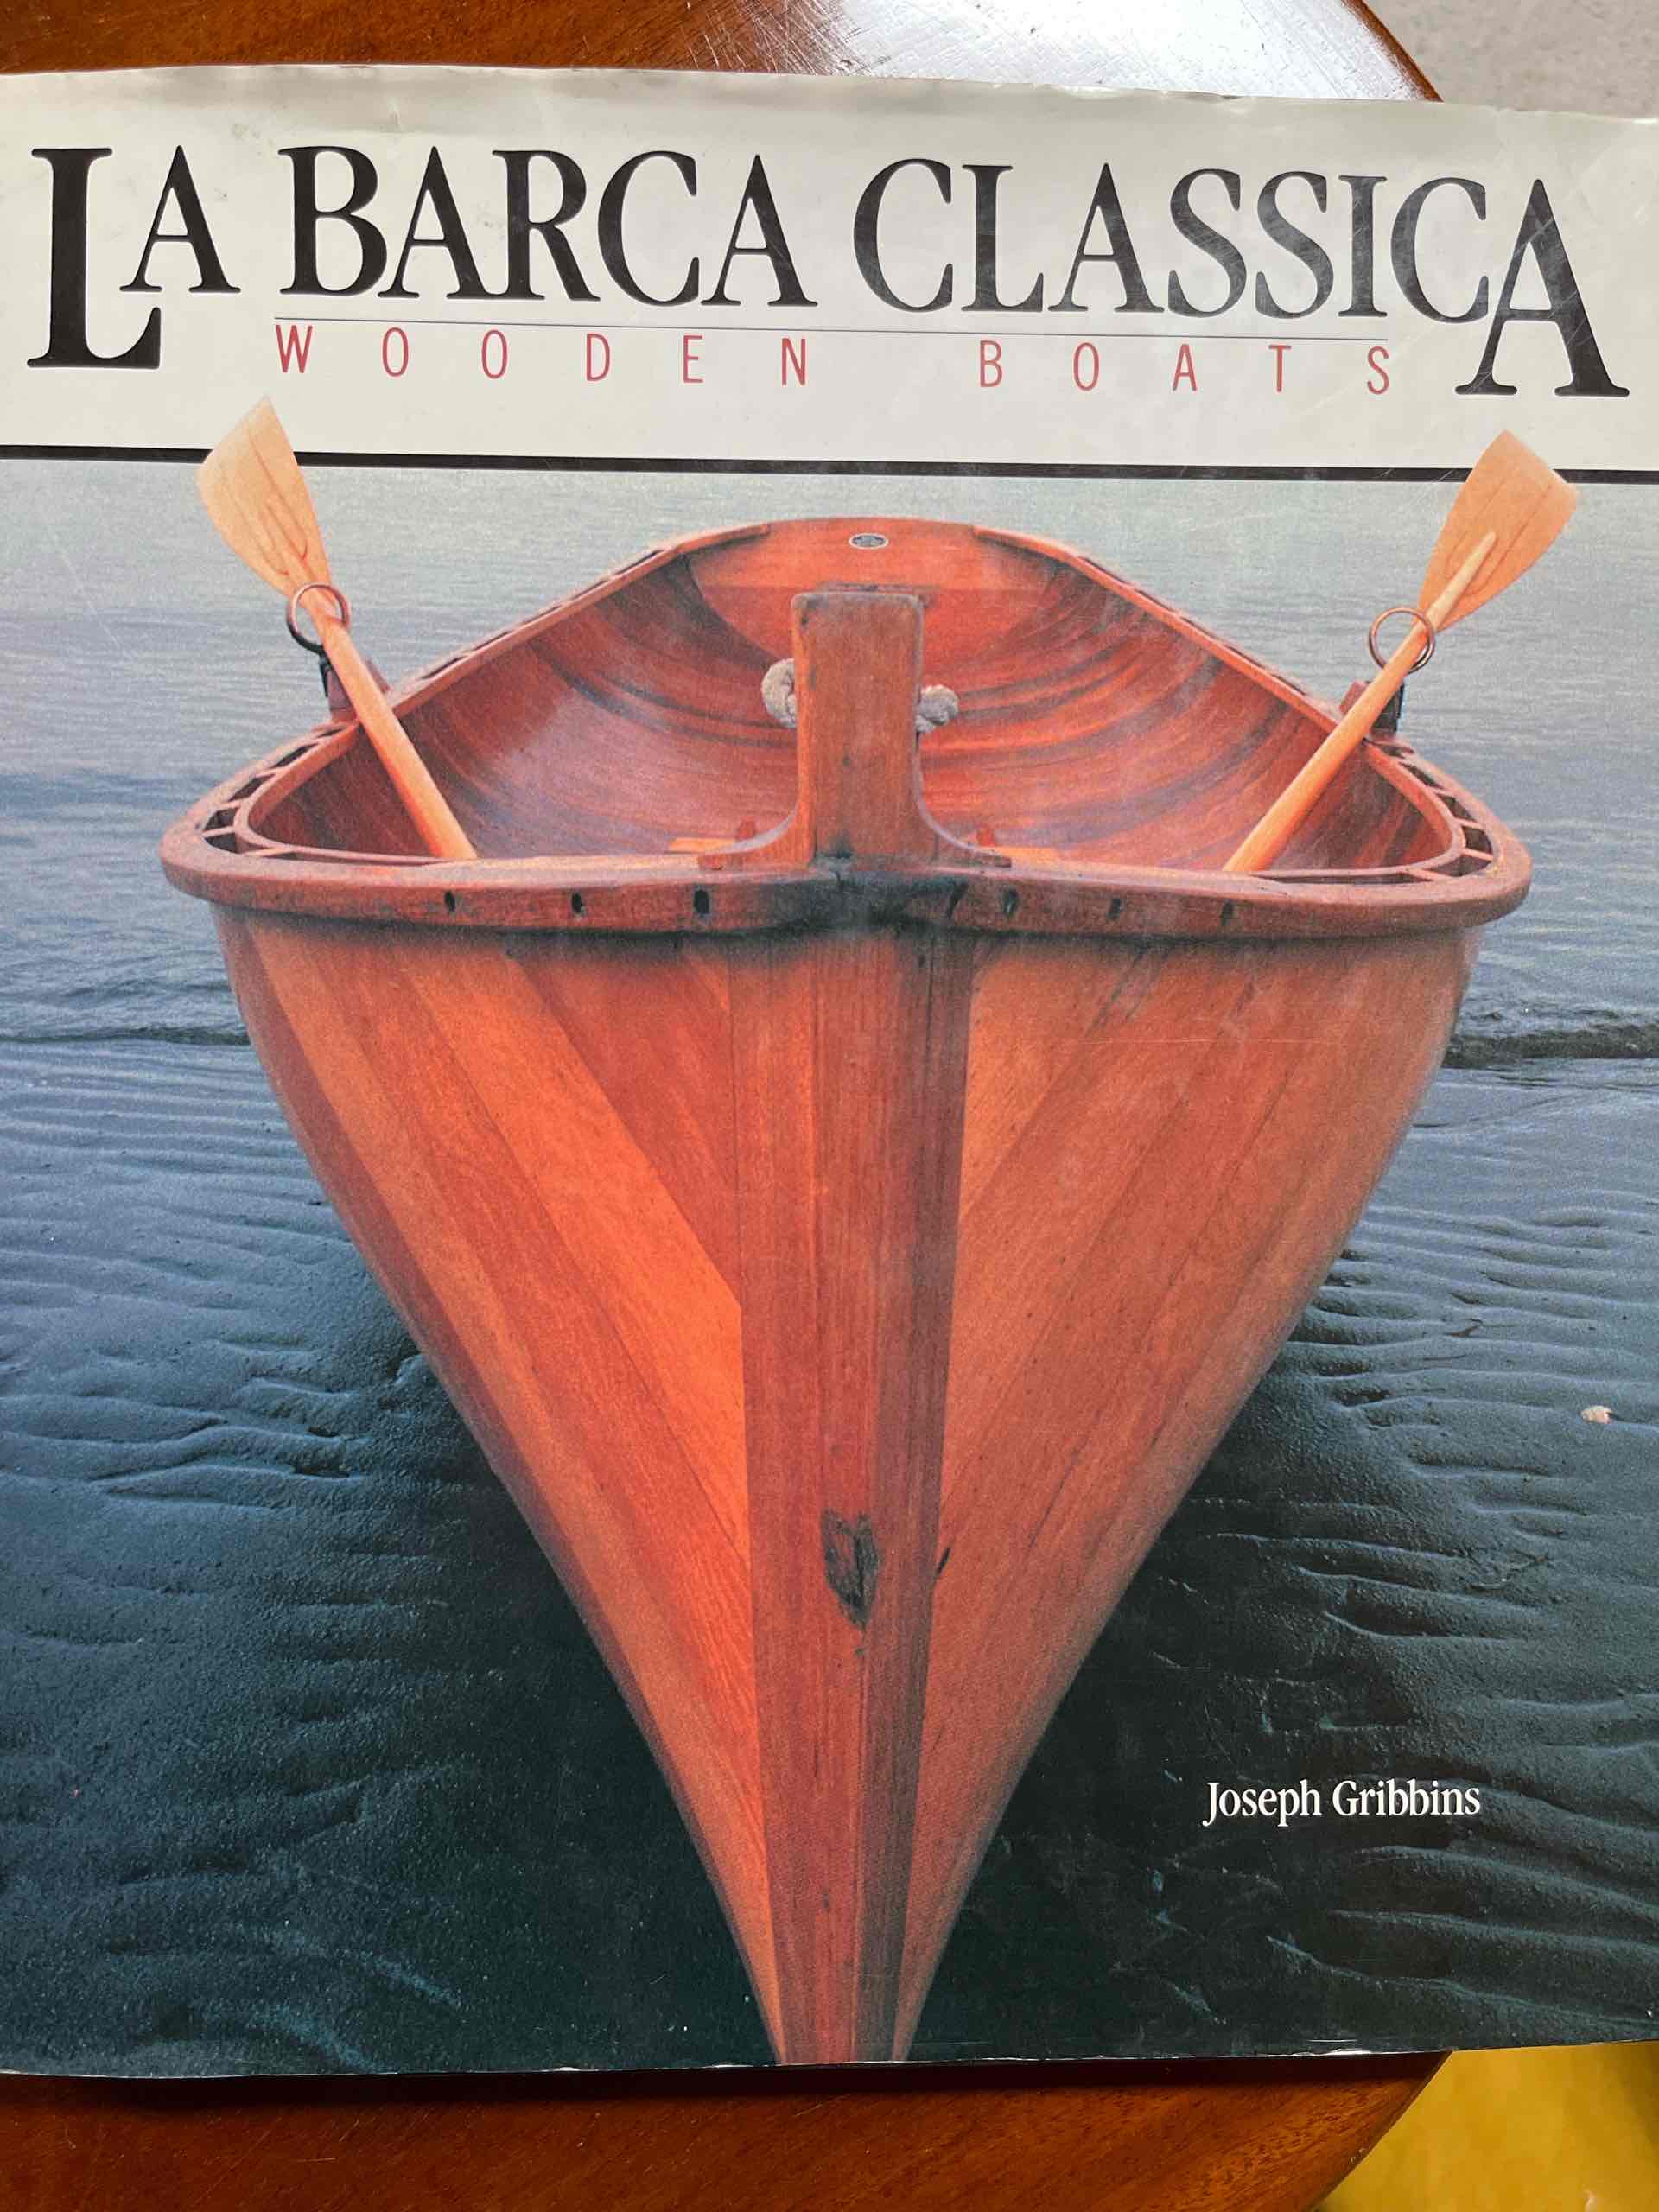 La barca classica-wooden boats libro usato